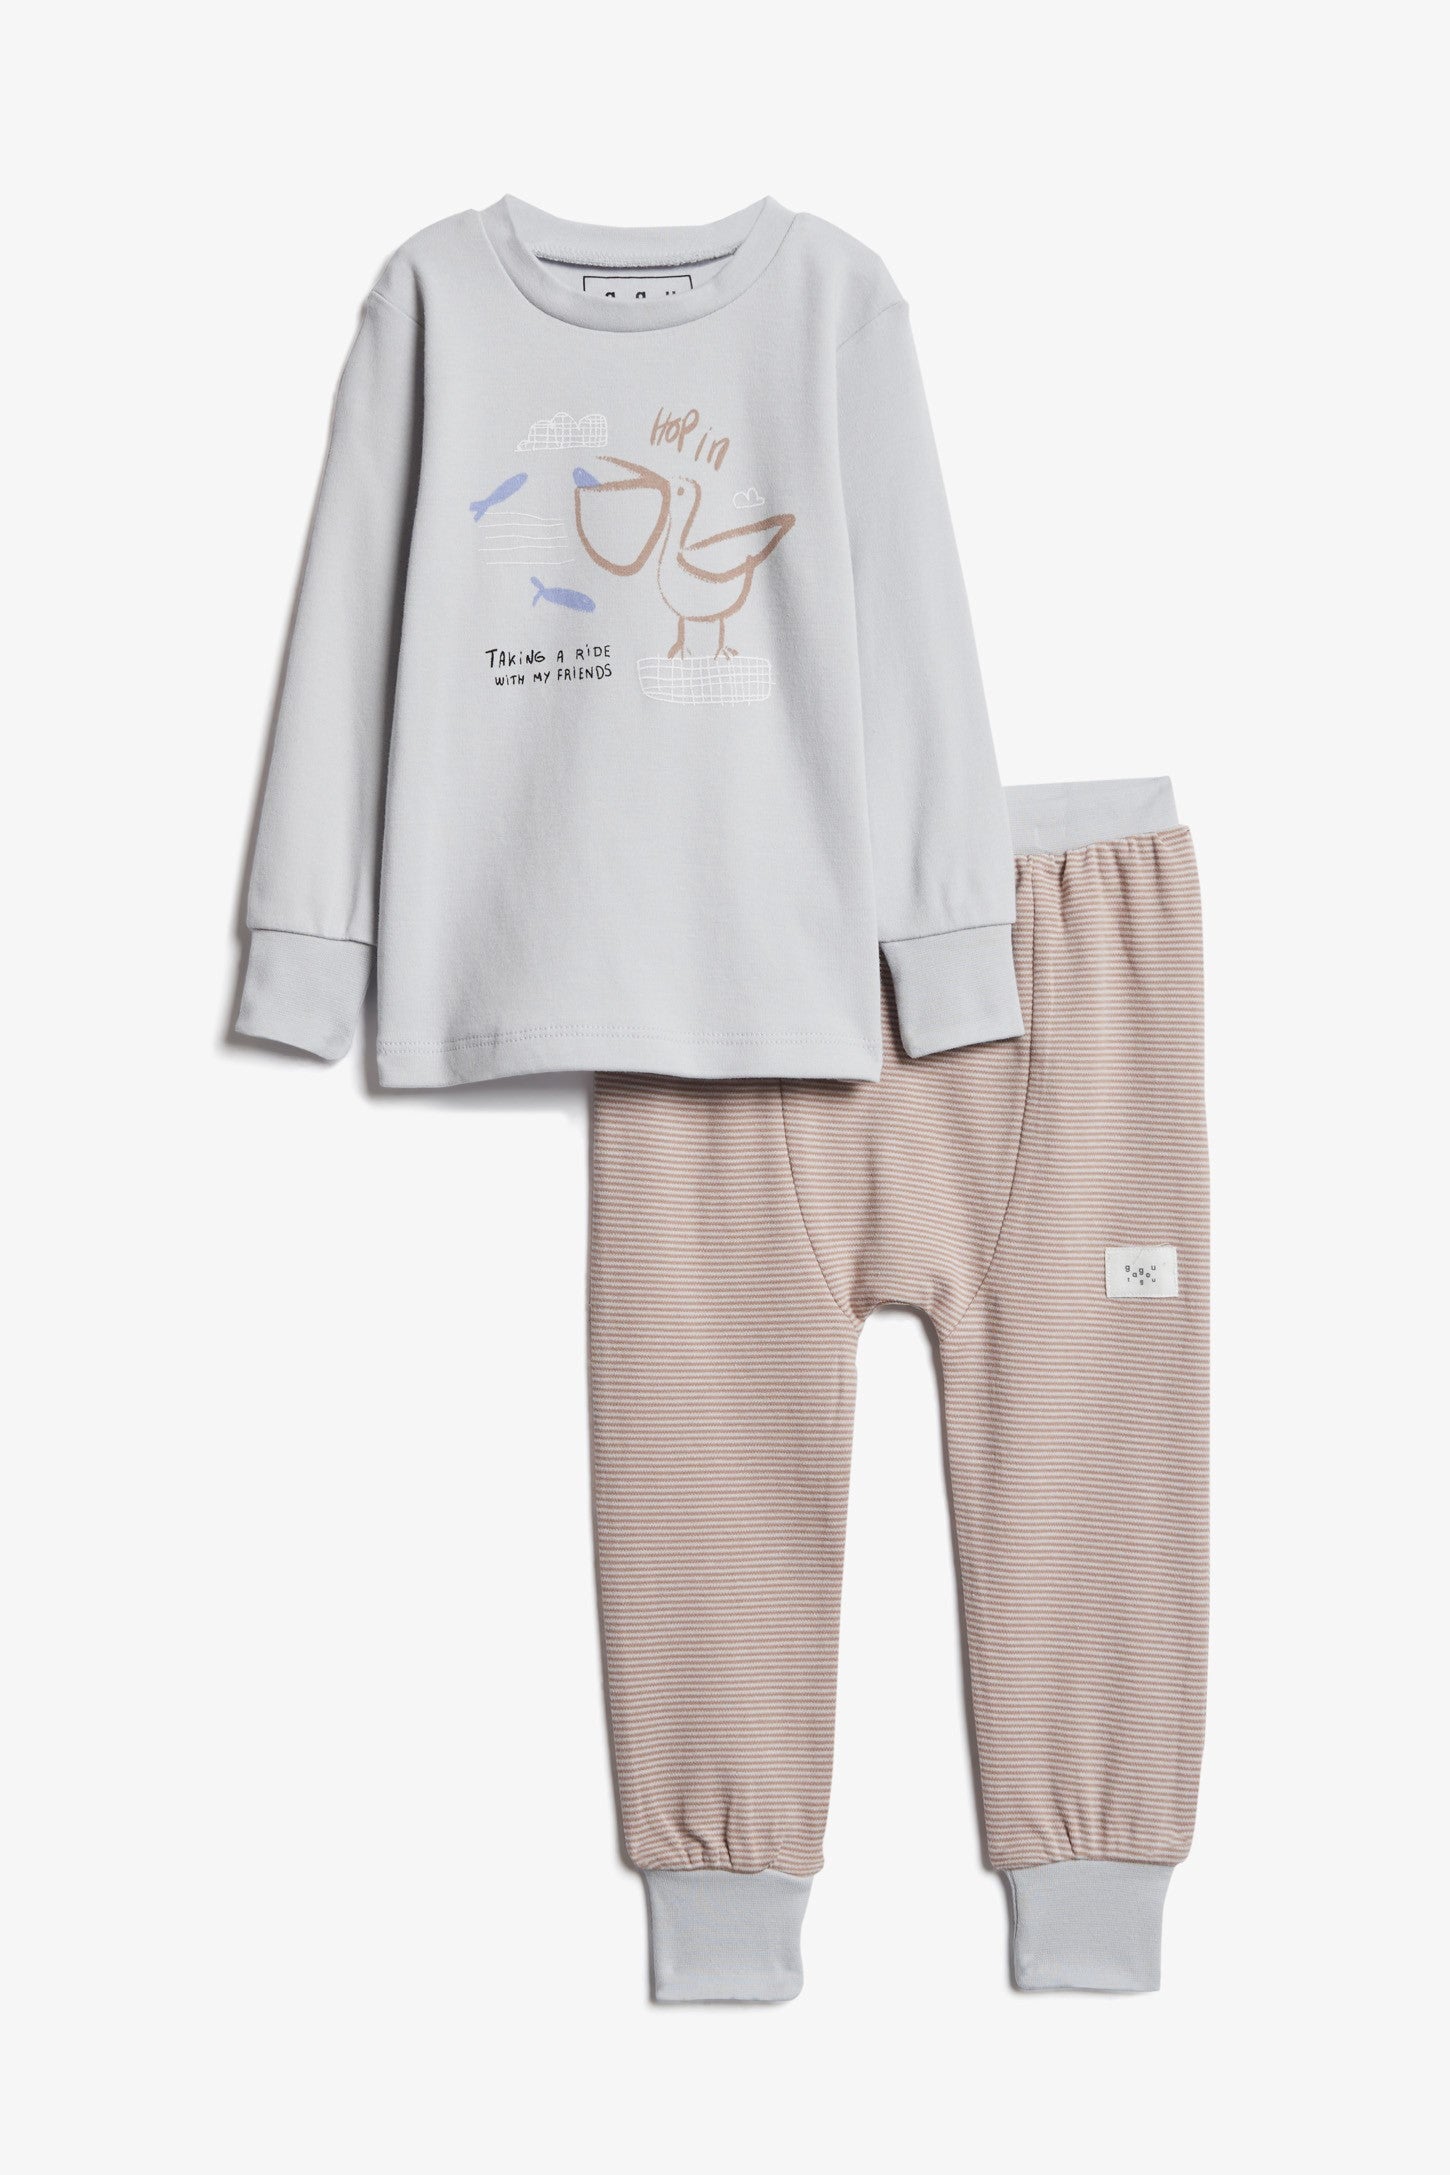 Pyjama 2-pièces imprimé, coton bio, 2T-3T - Bébé && GRIS